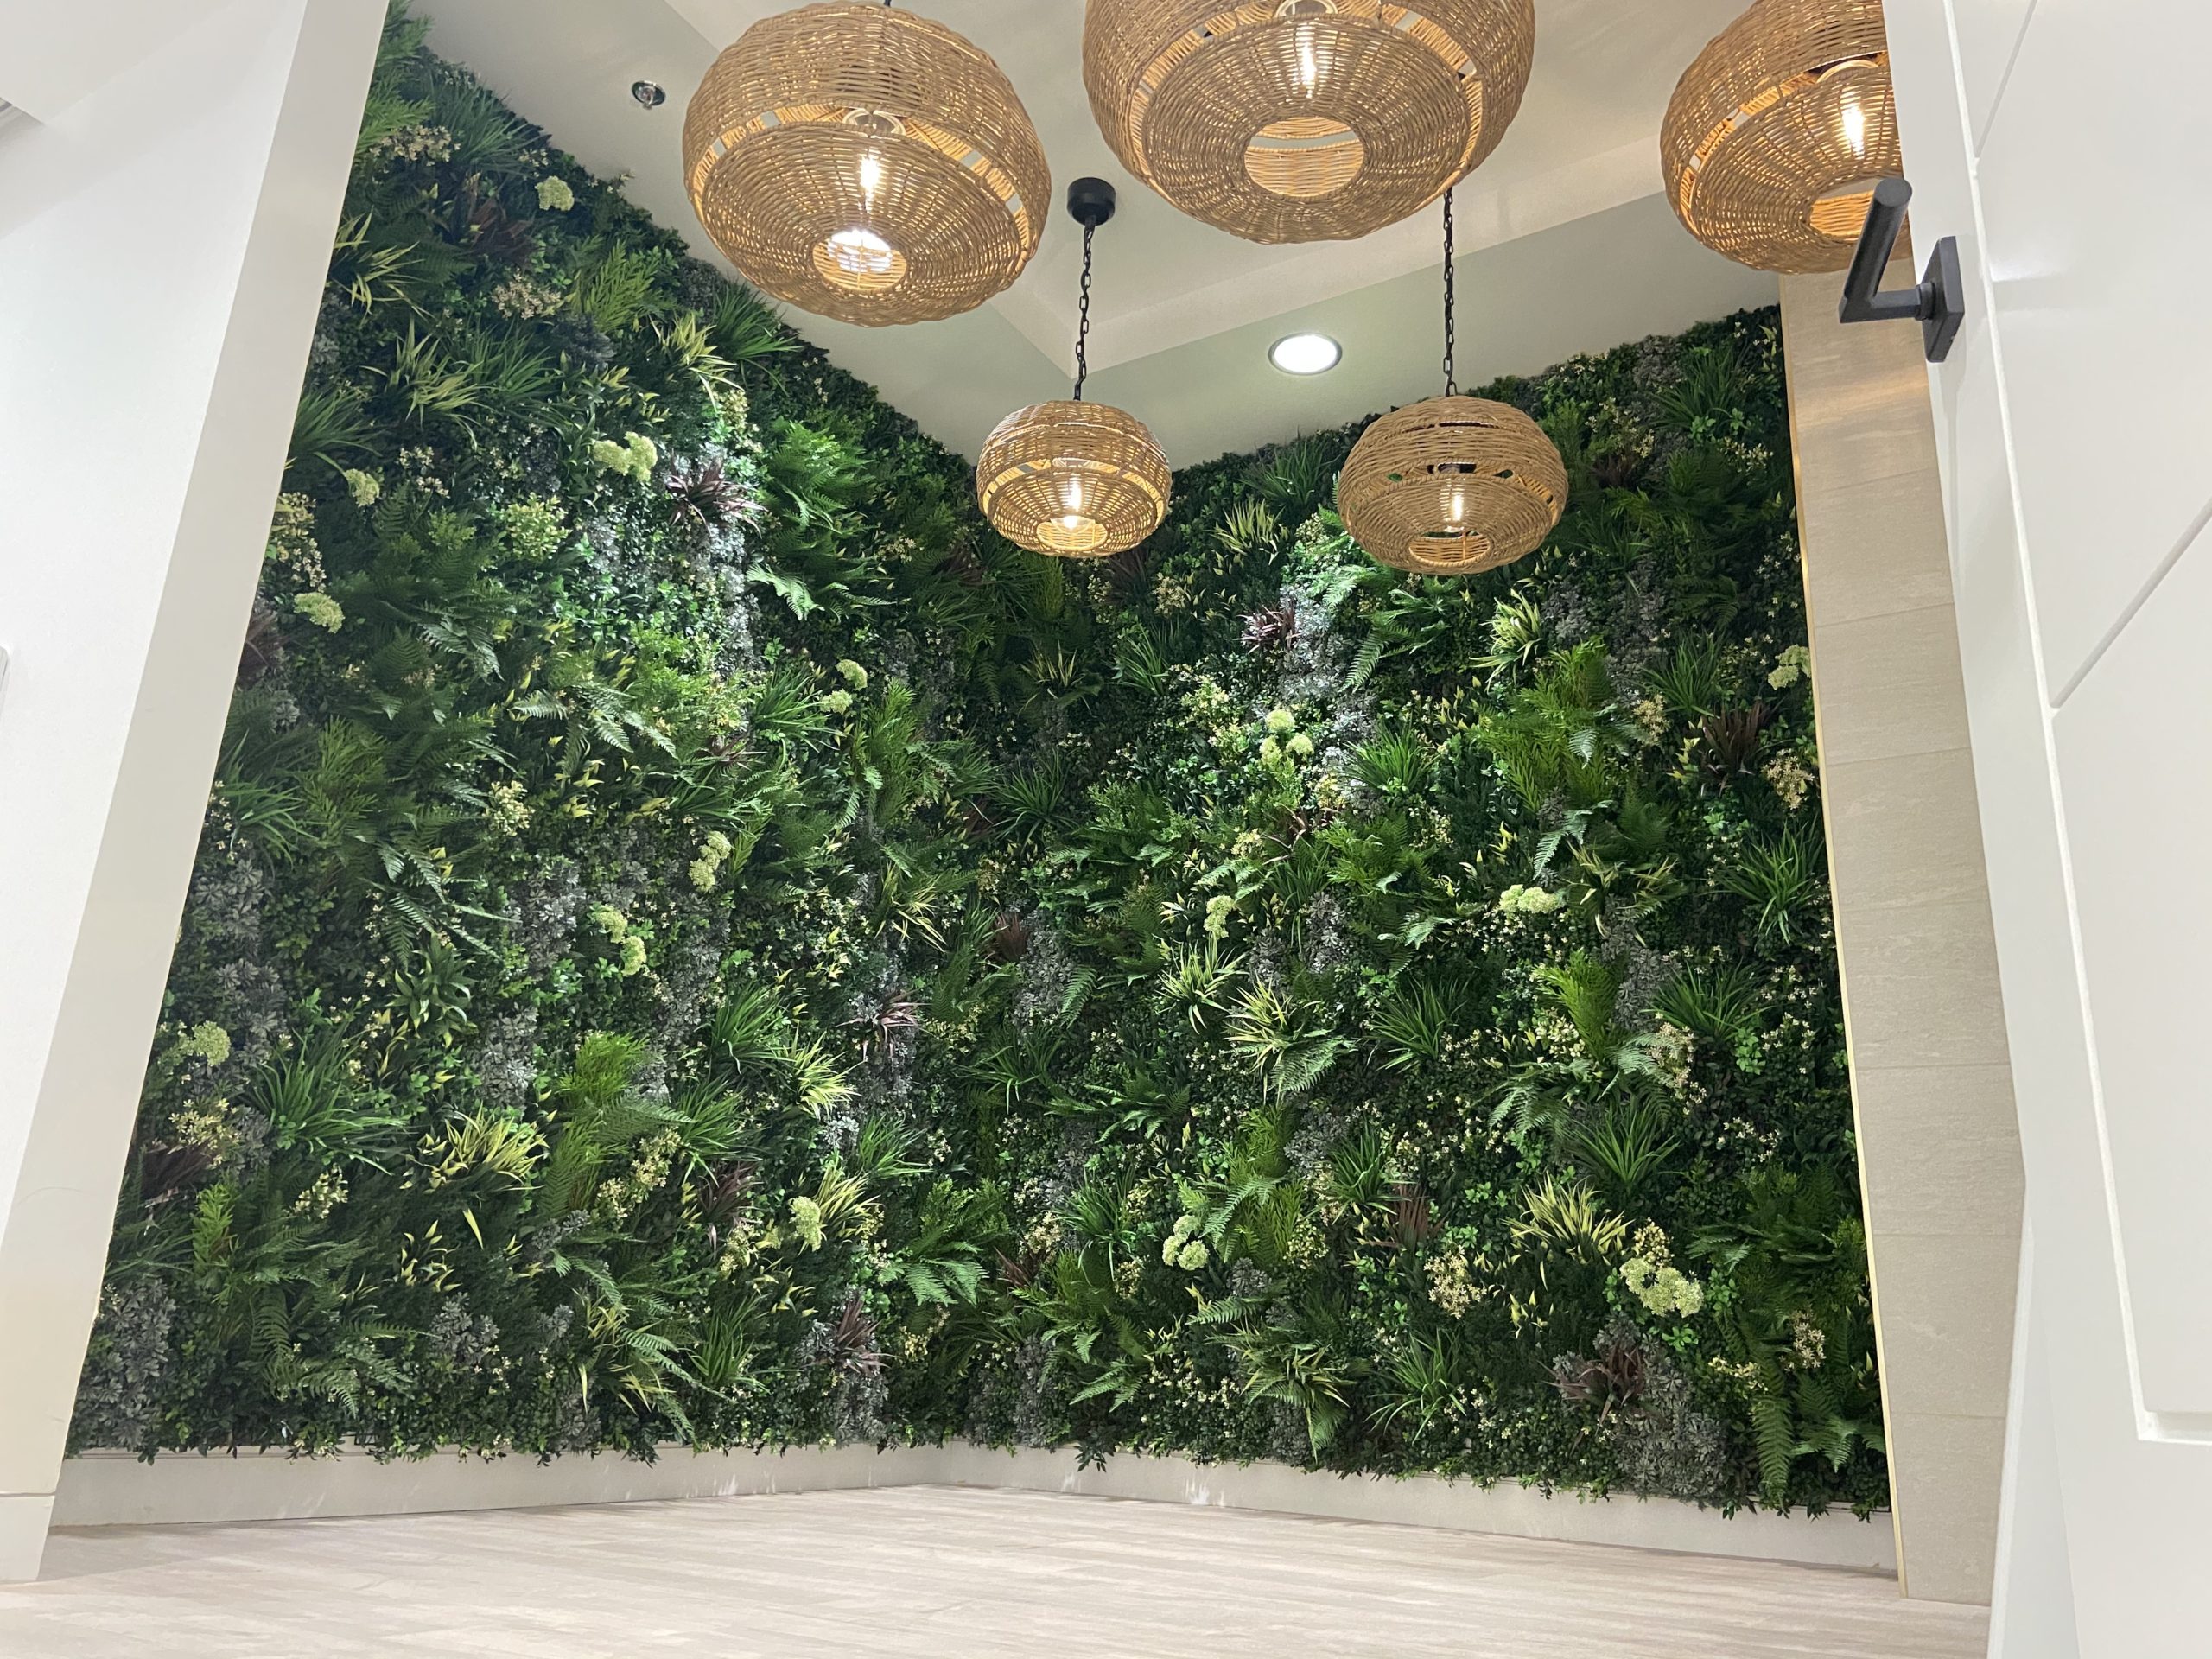 Internal Vistafolia Green Wall Installation in Las Vegas, Nevada